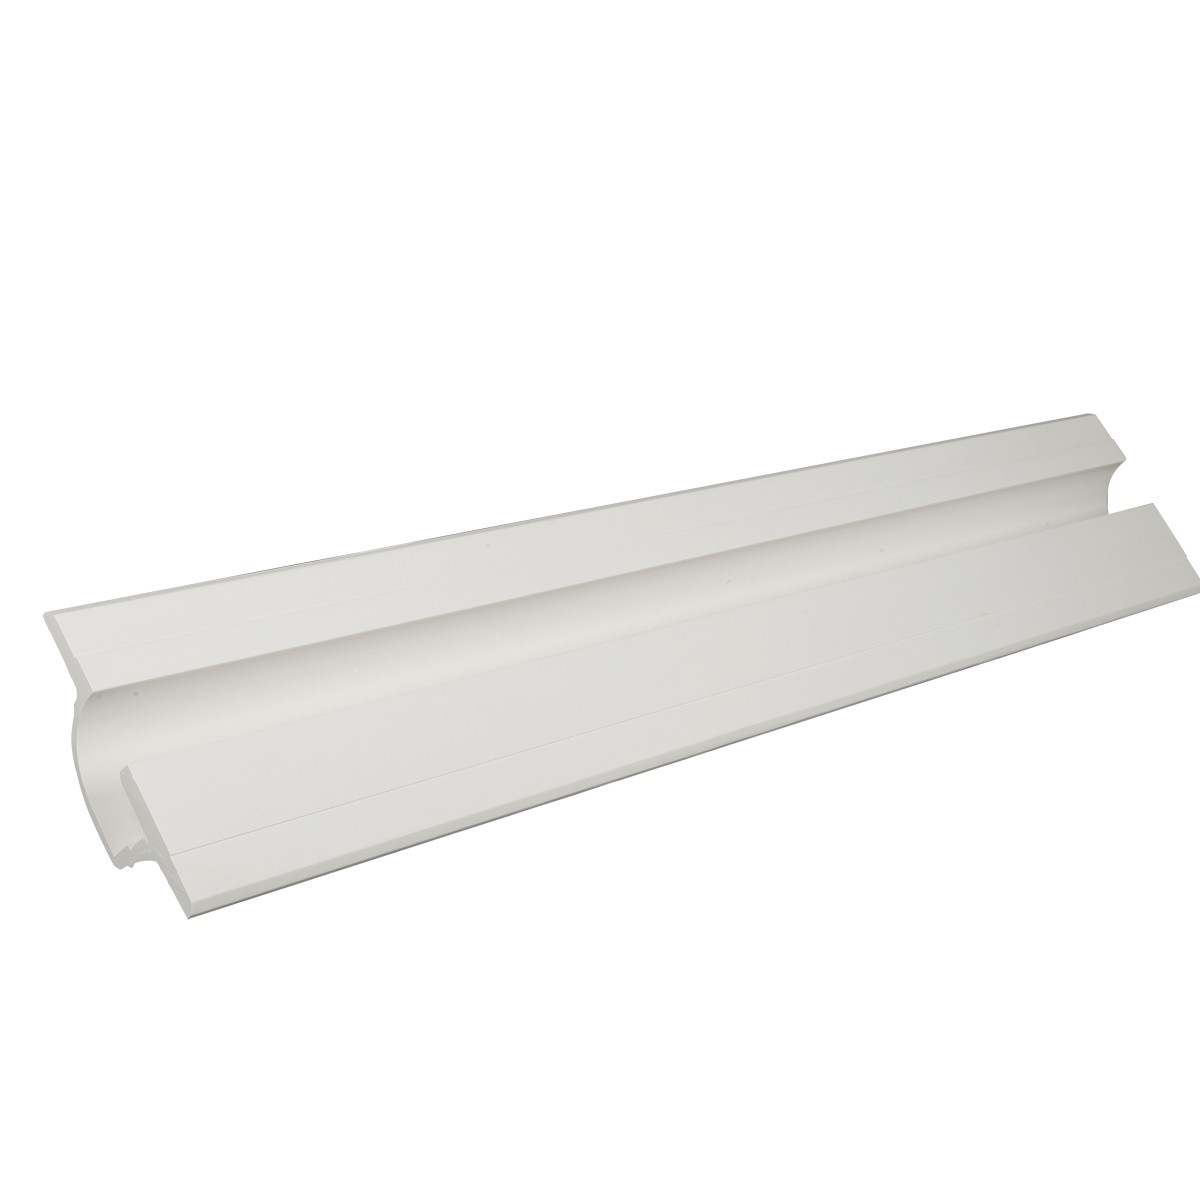 Φωτιστικό Τοίχου/Οροφής Γύψινο Led Strips Λευκό Χρώμα         VK/09034